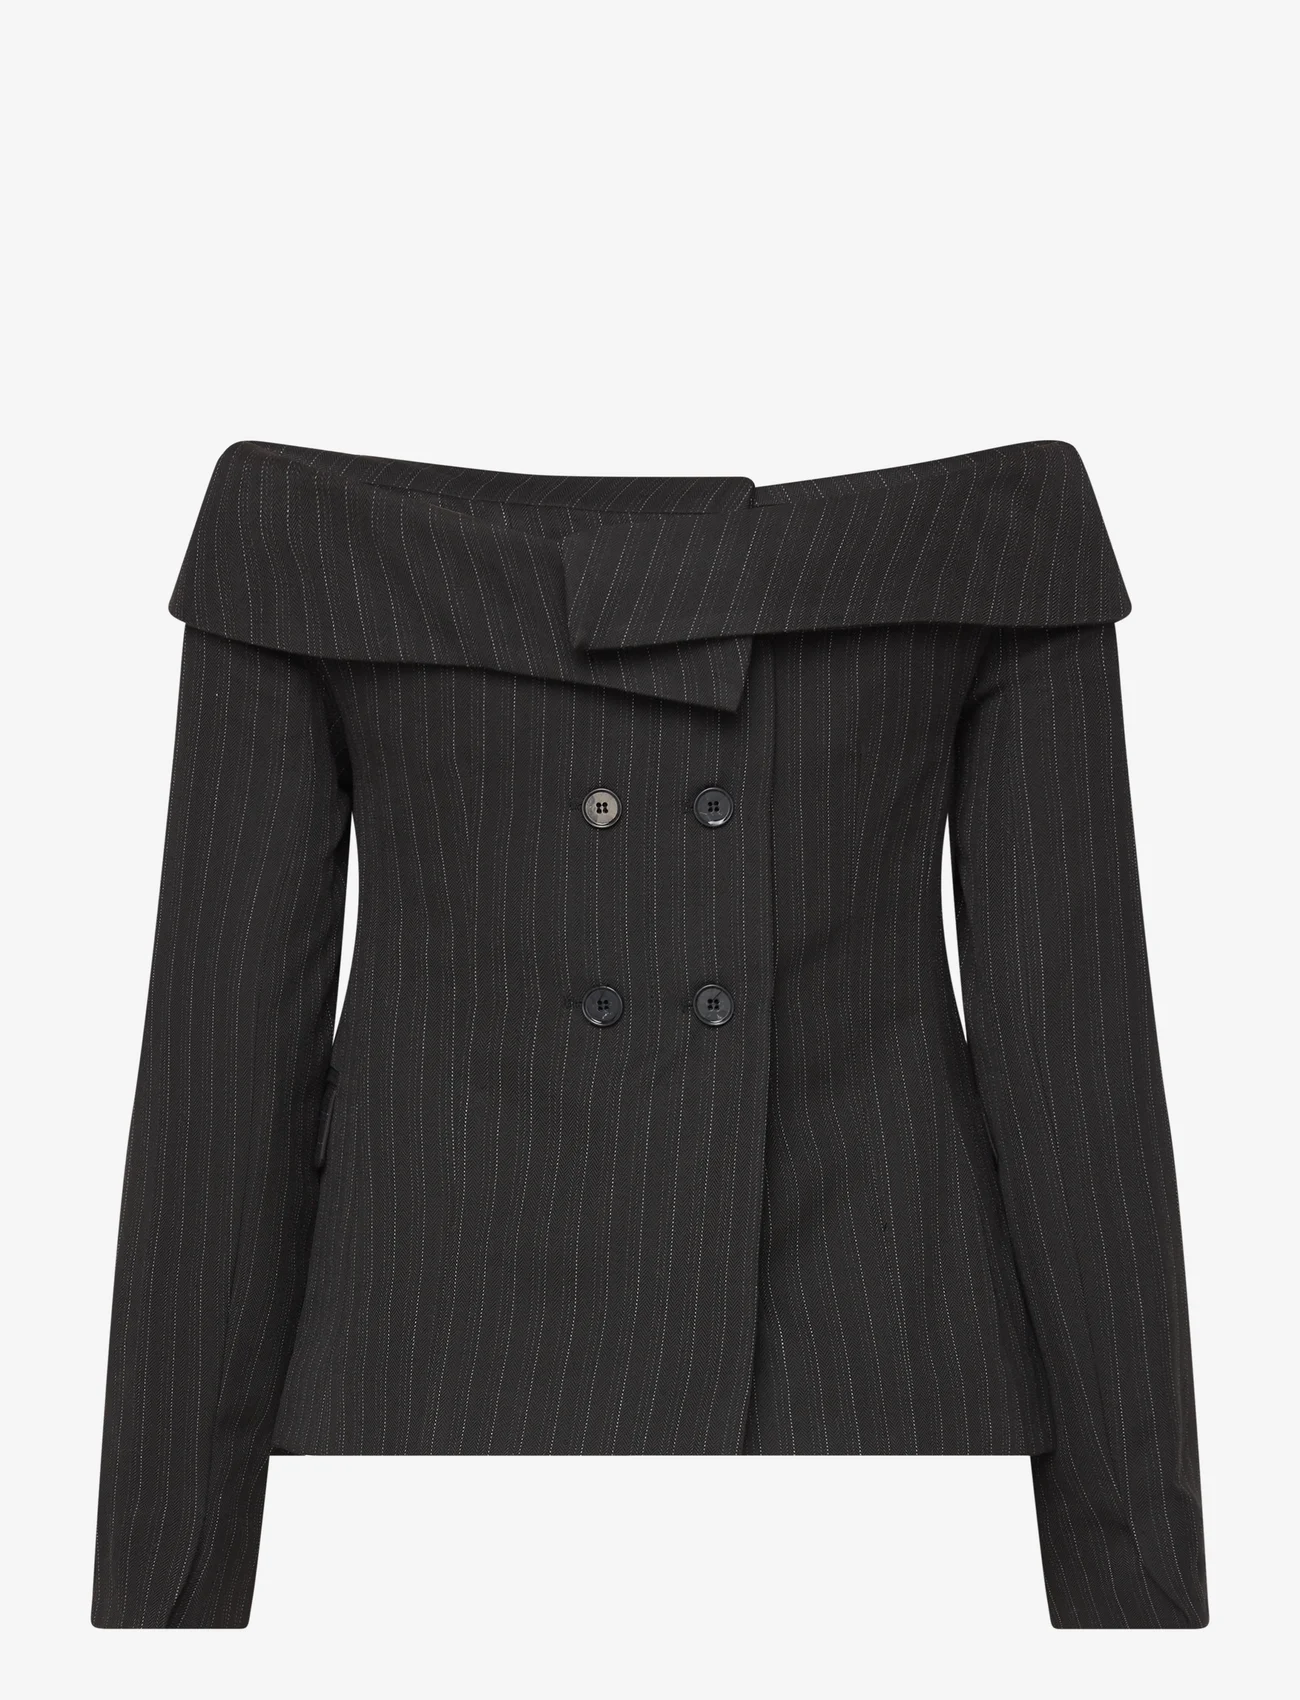 Les Coyotes De Paris - Off shoulder suiting top - ballīšu apģērbs par outlet cenām - black pinstripe - 1